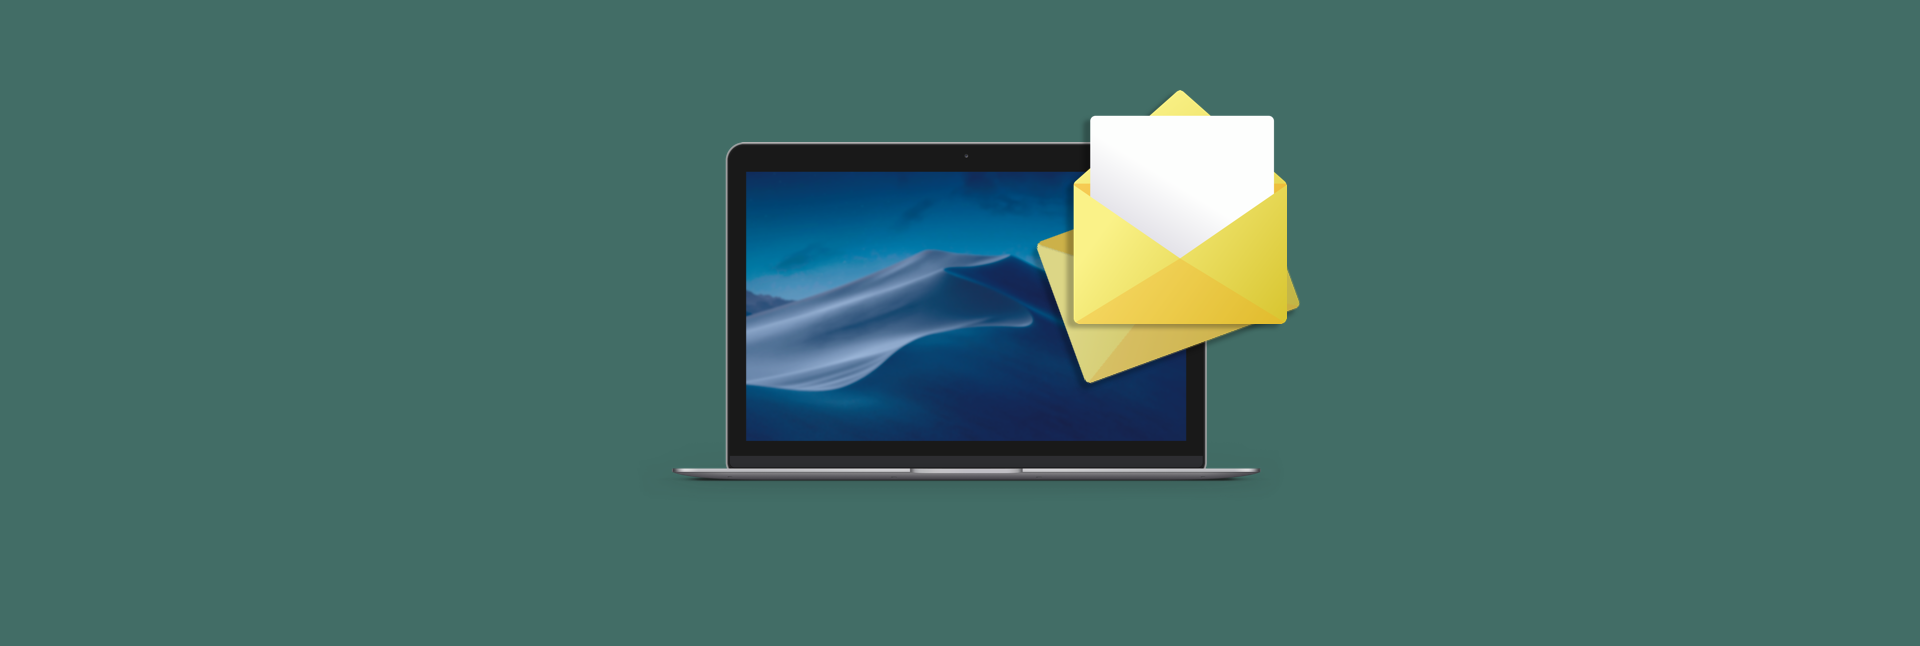 best email platform for mac